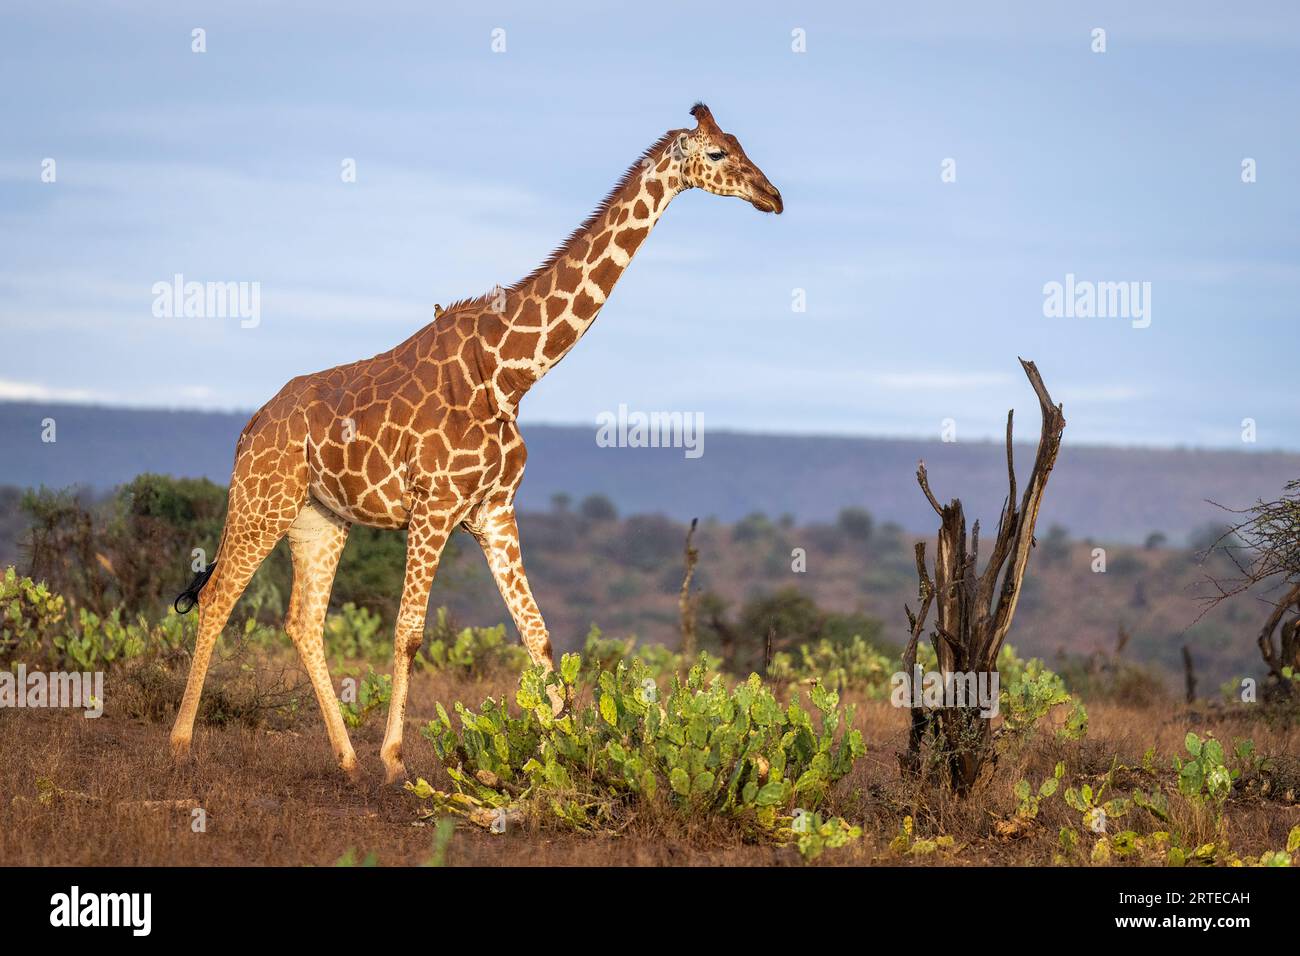 Girafe réticulée (Giraffa reticulata) traversant la savane contre un ciel bleu de lumière dorée ; Segera, Laikipia, Kenya Banque D'Images